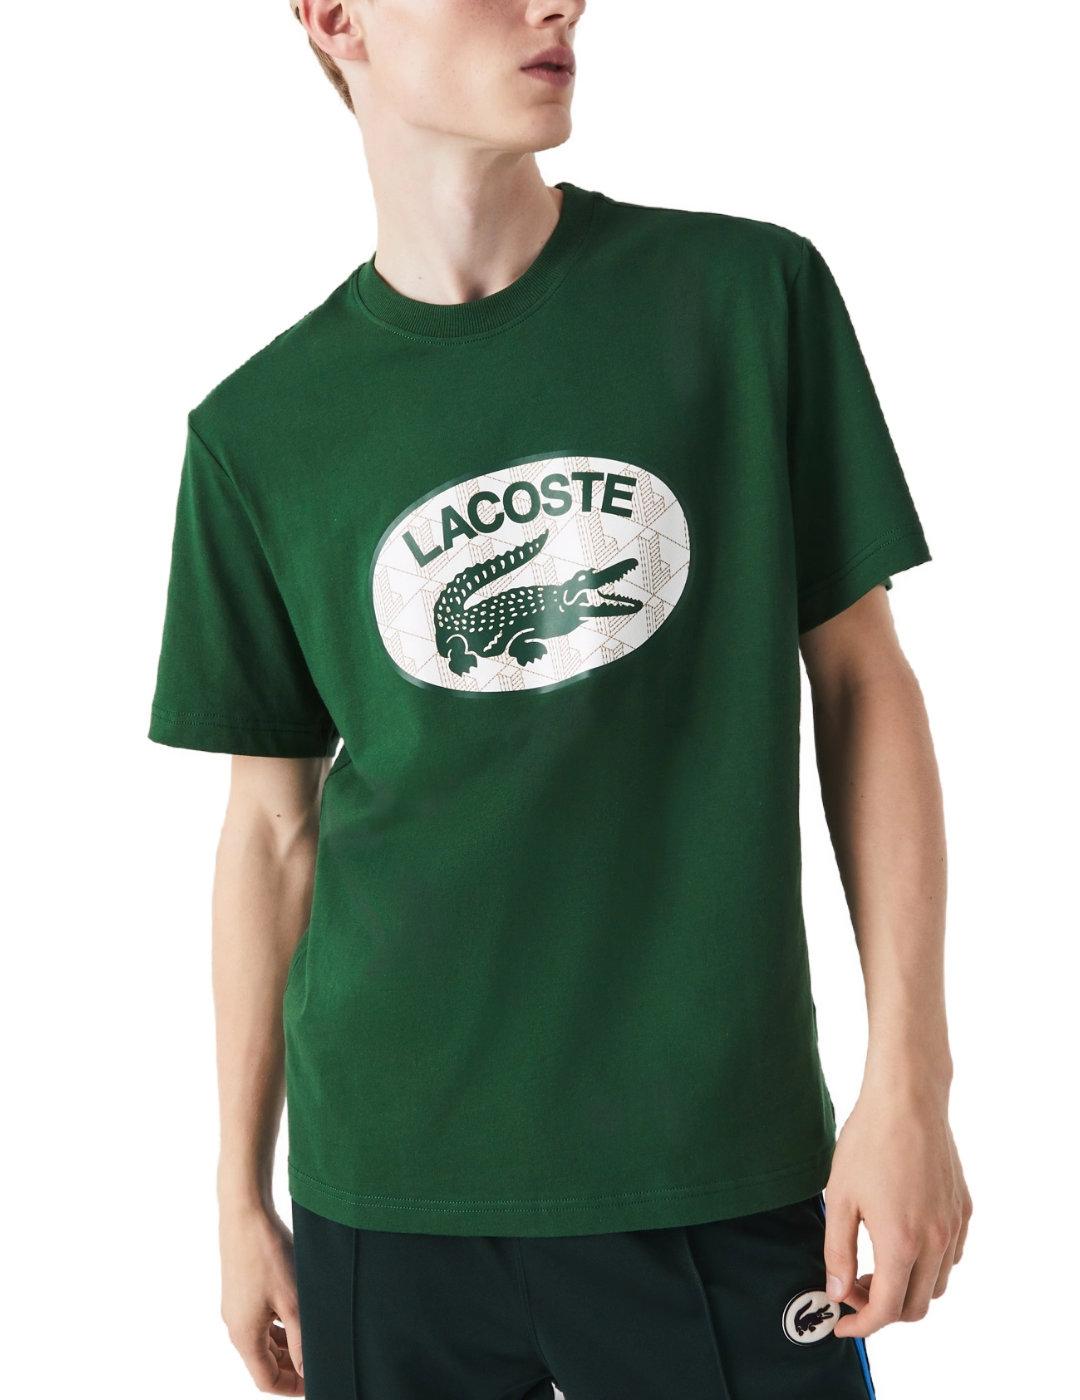 Camiseta Lacoste verde logo blanco de hombre-b